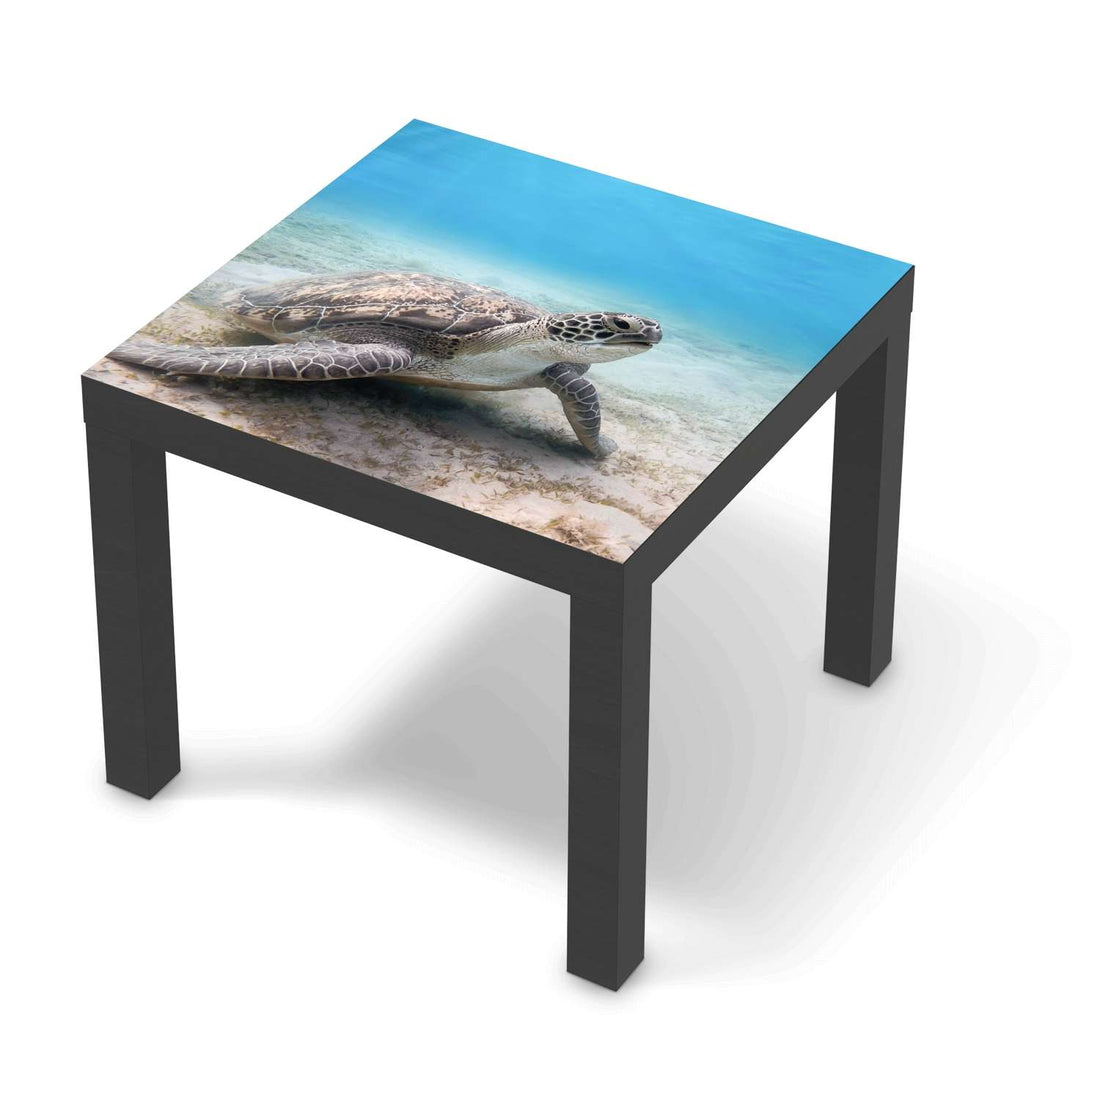 Möbelfolie Green Sea Turtle - IKEA Lack Tisch 55x55 cm - schwarz